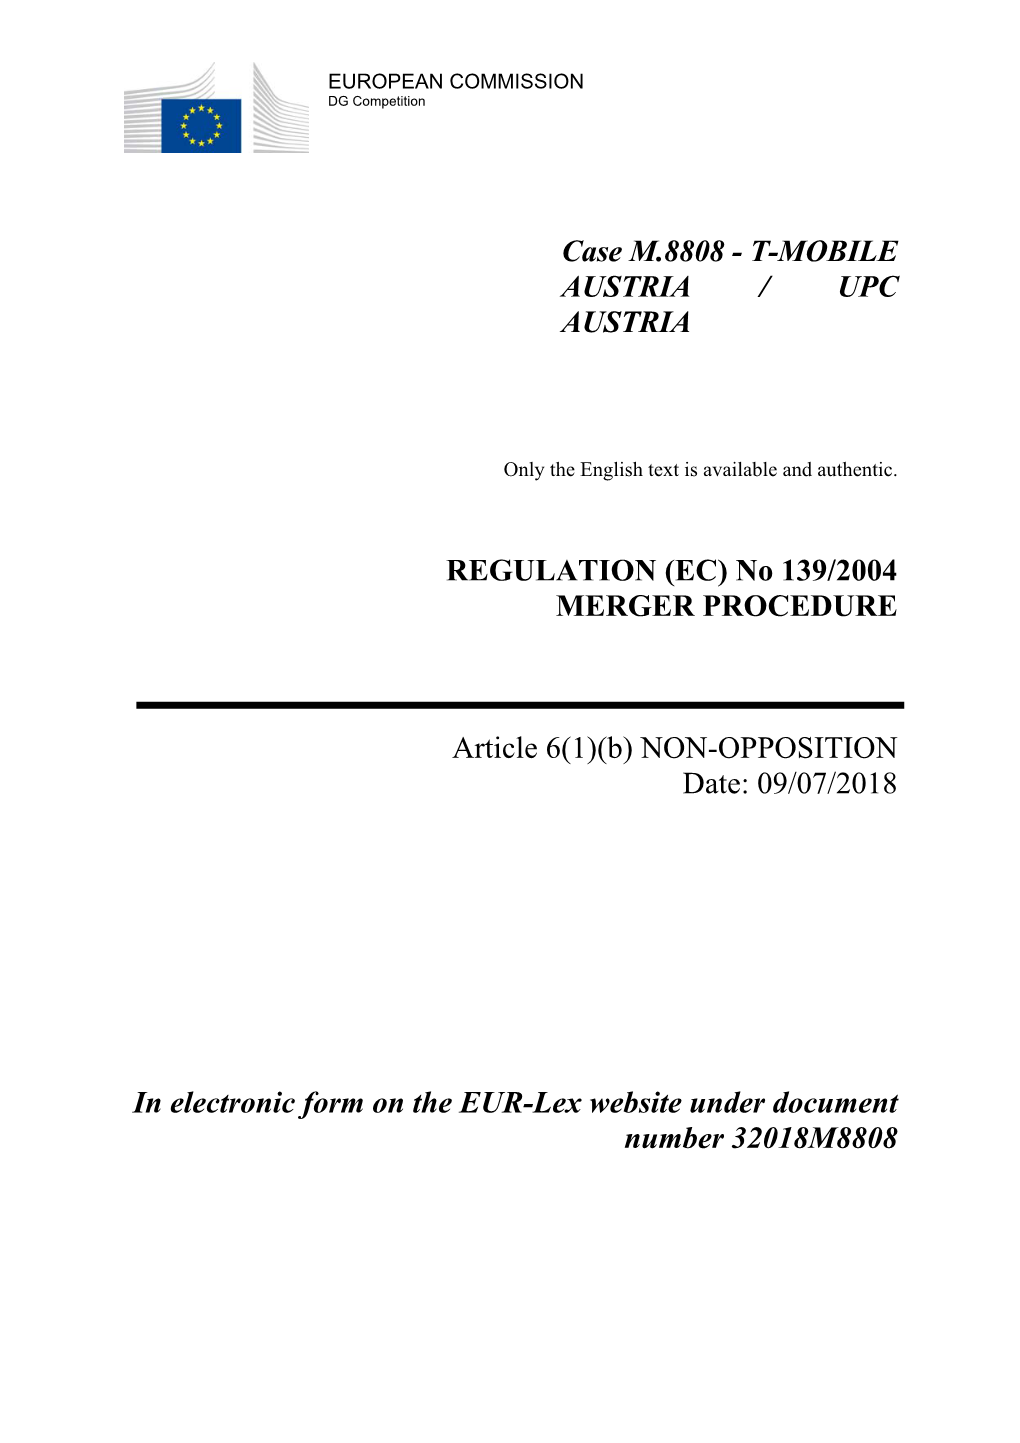 Case M.8808 - T-MOBILE AUSTRIA / UPC AUSTRIA